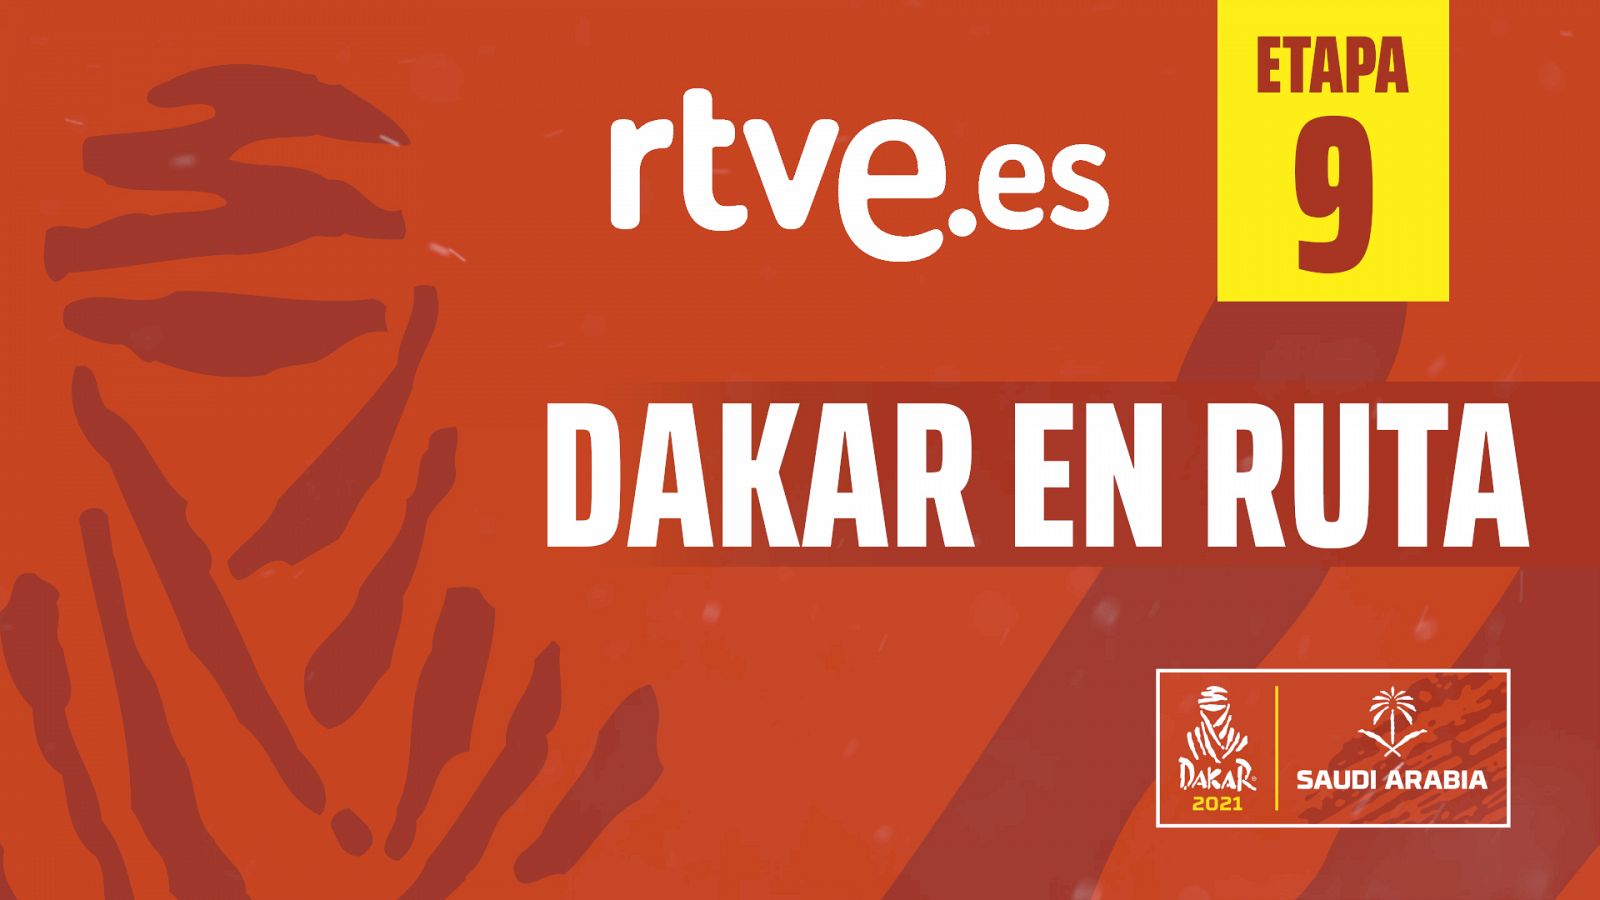 Dakar 2021 Etapa 9 | Dakar en ruta - Resumen de la Etapa 9